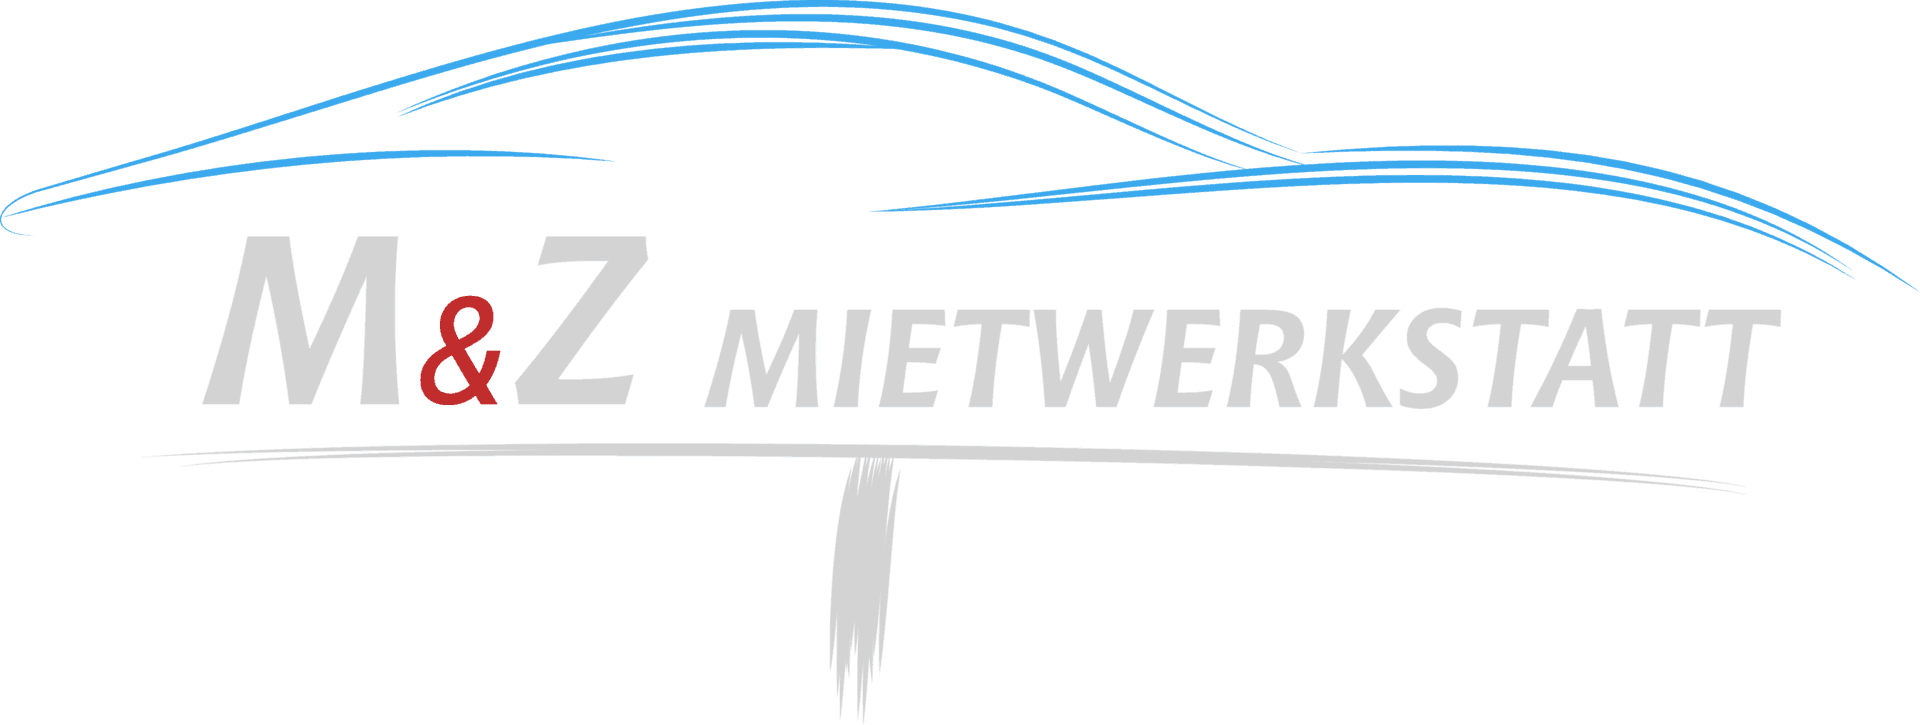 Logo M&Z Mietwerkstatt am Bodensee